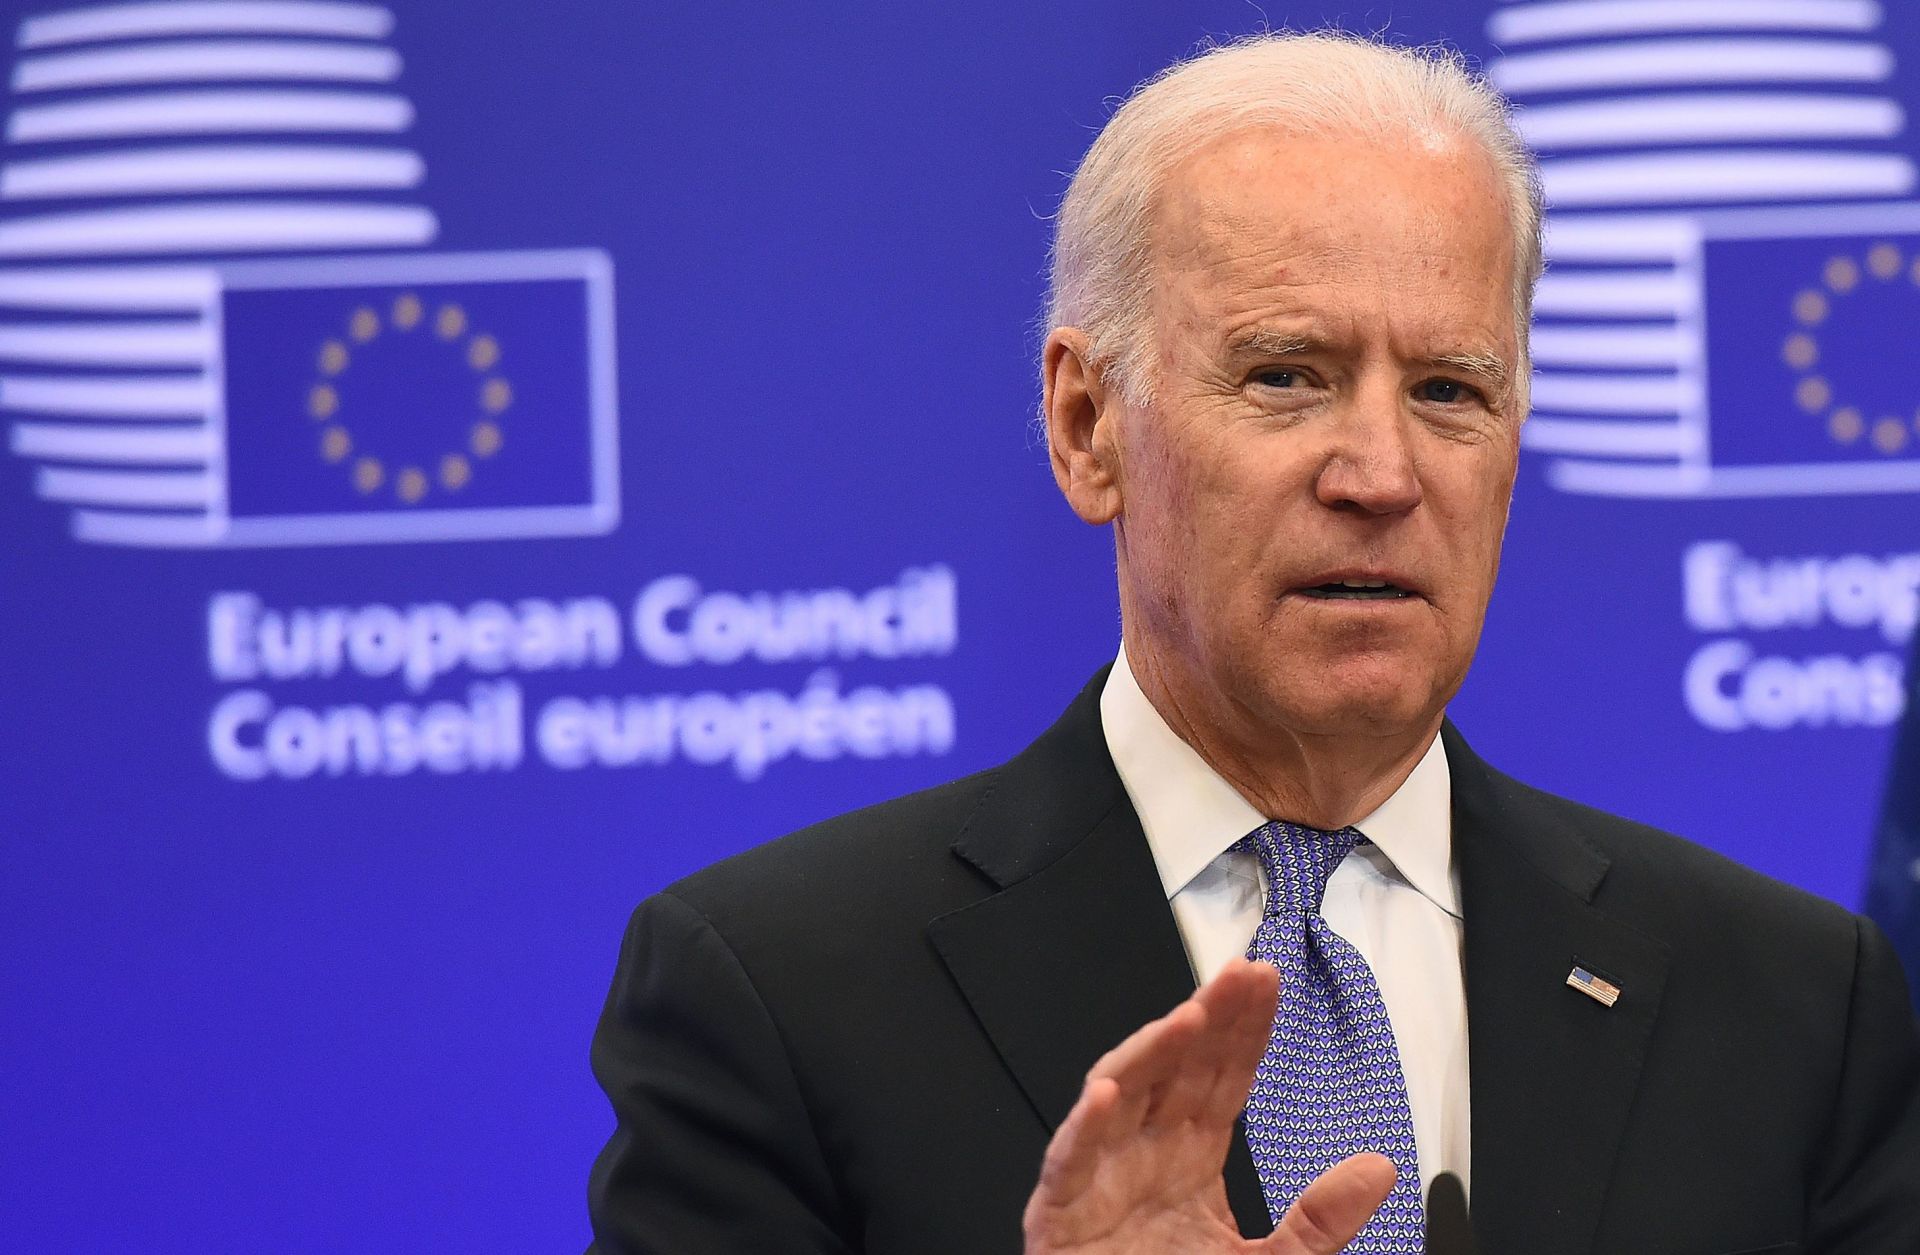 Then-U.S. Vice President Joe Biden speaks during a 2015 meeting with EU leaders in Brussels, Belgium.